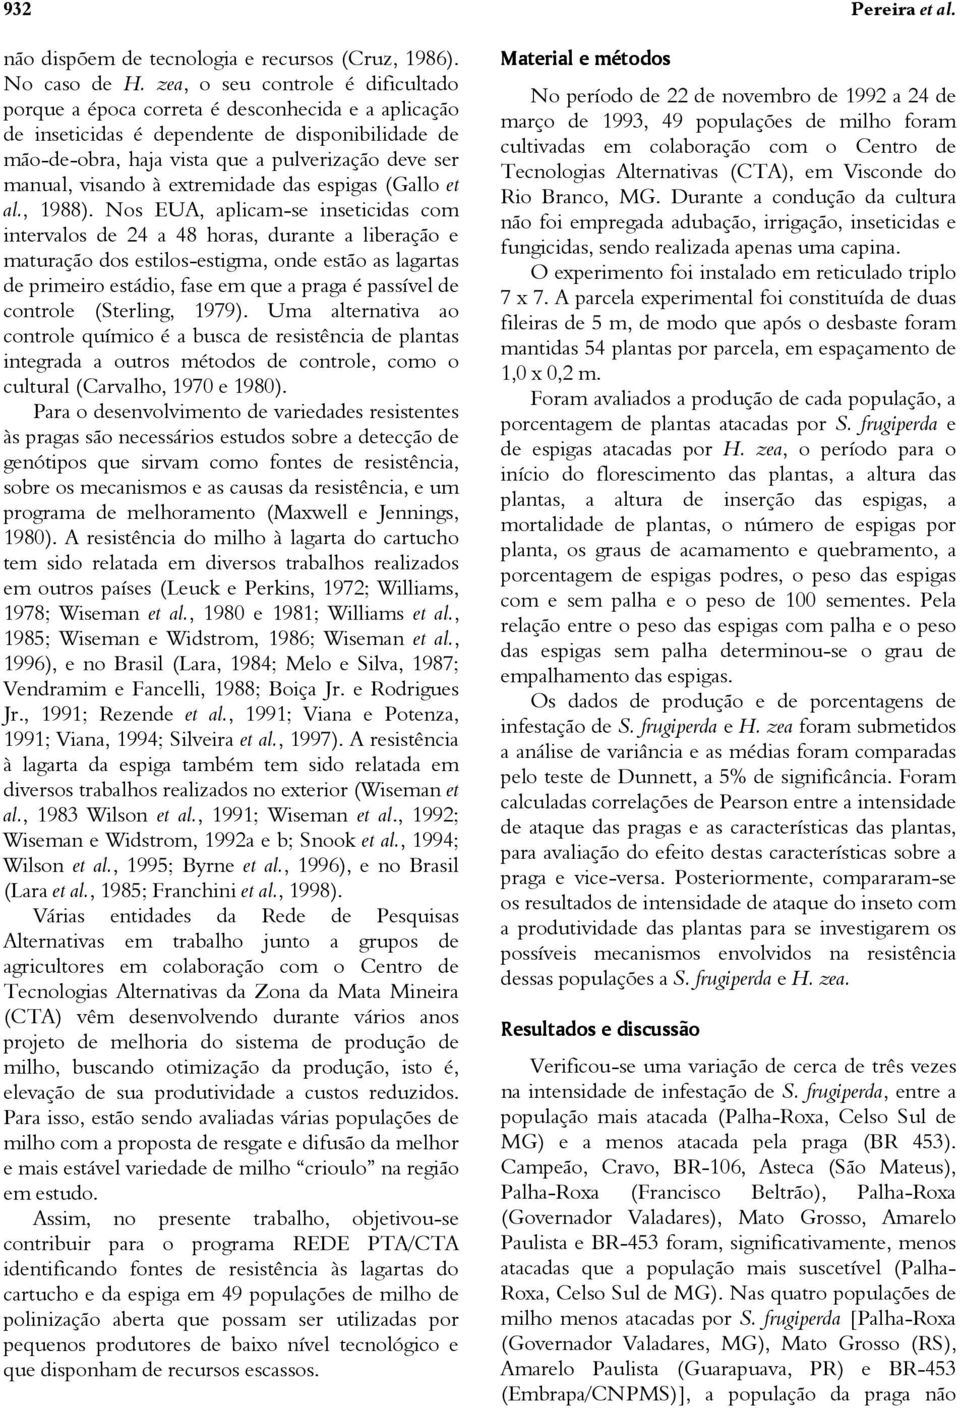 visando à extremidade das espigas (Gallo et al., 1988).